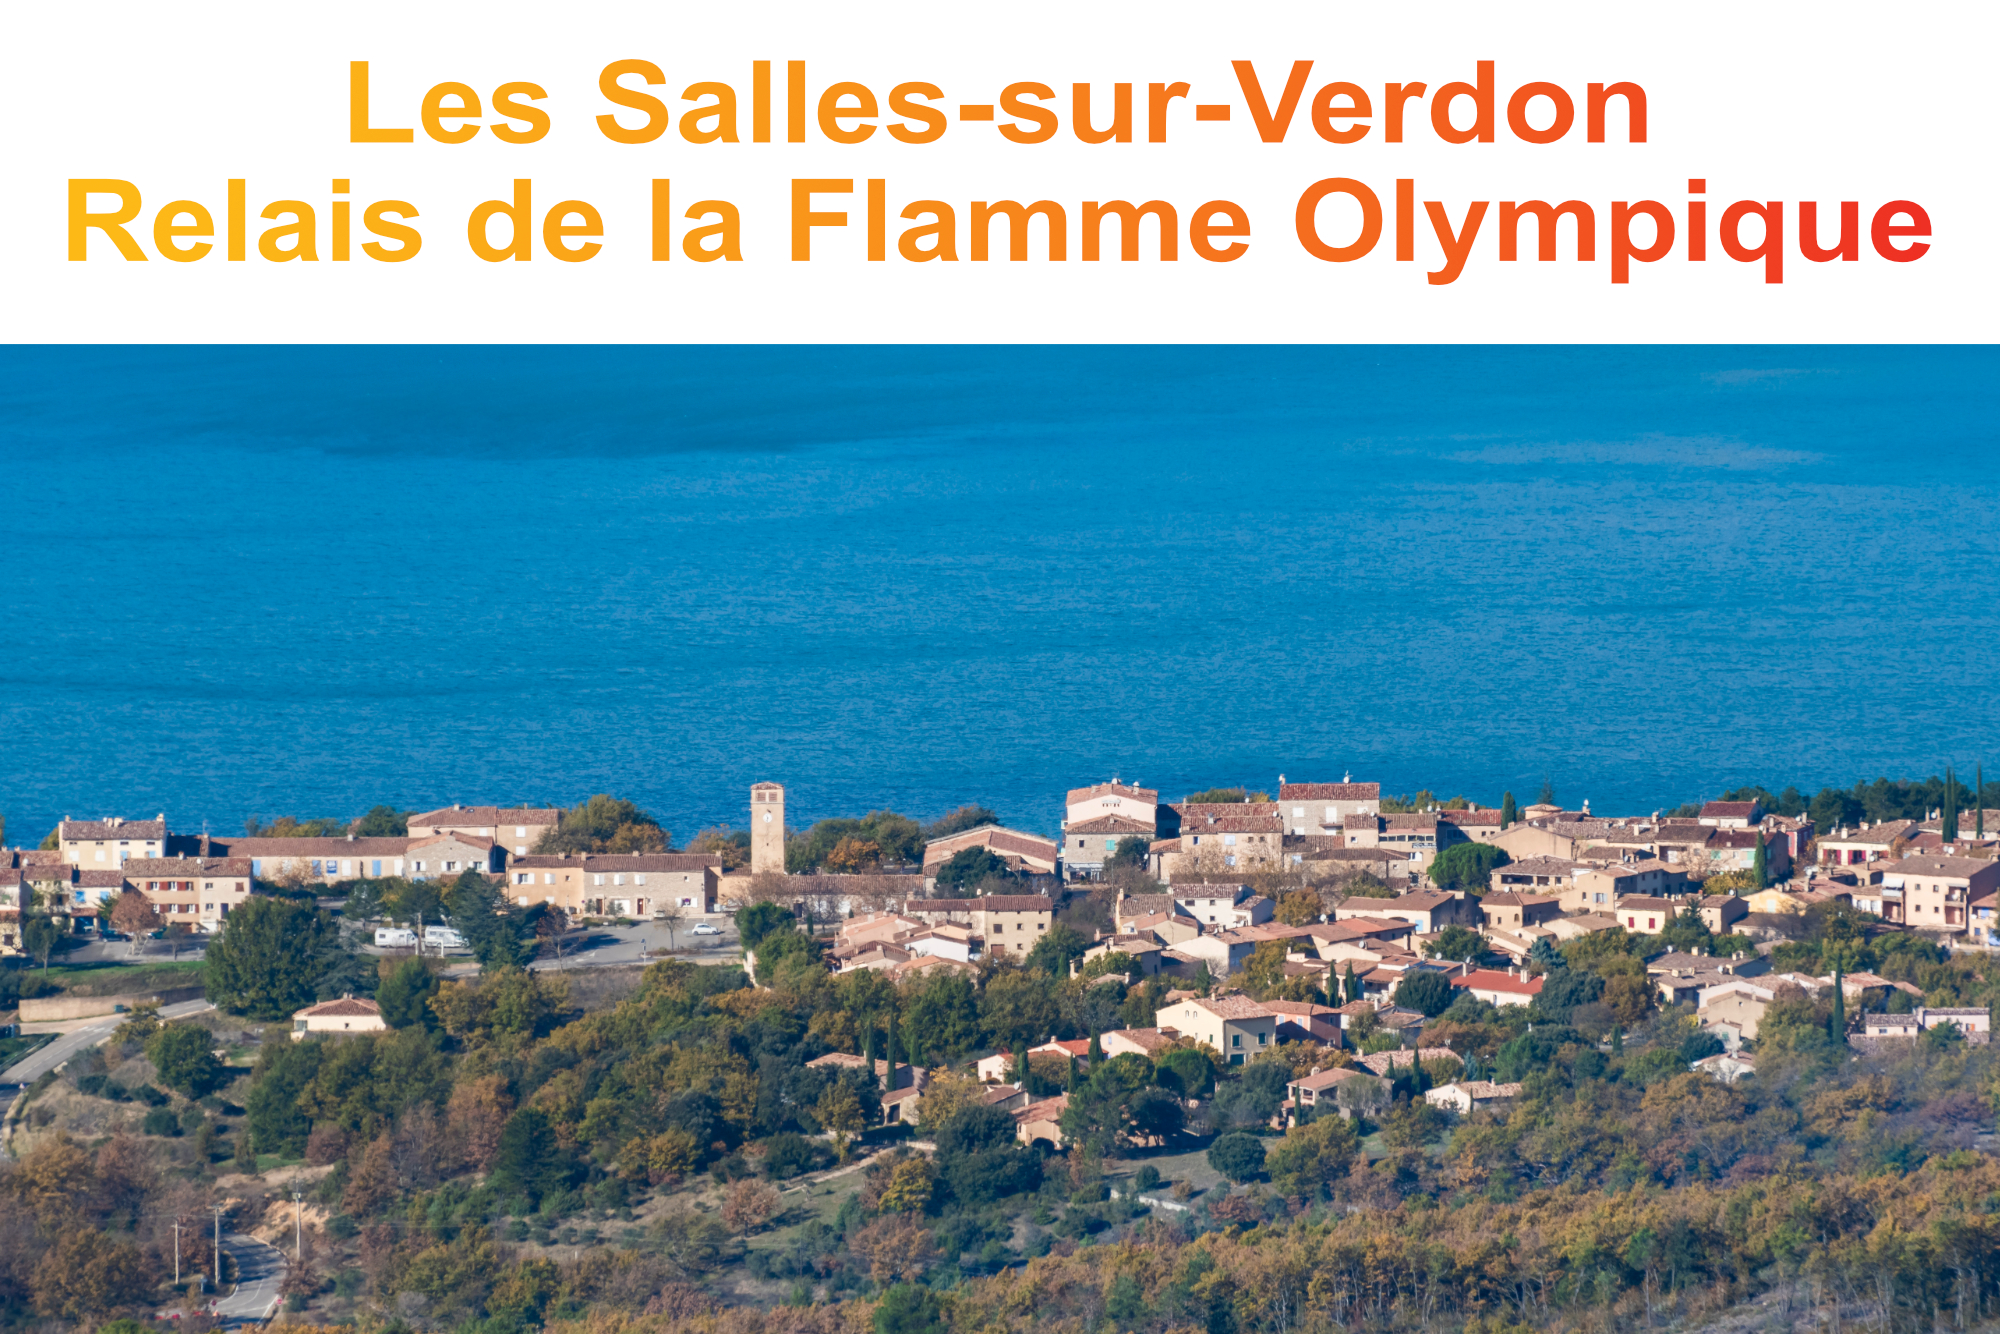 Relais de la flamme Olympique -Les Salles-sur-Verdon 10 mai - Relais de la flamme Olympique -Les Salles-sur-Verdon